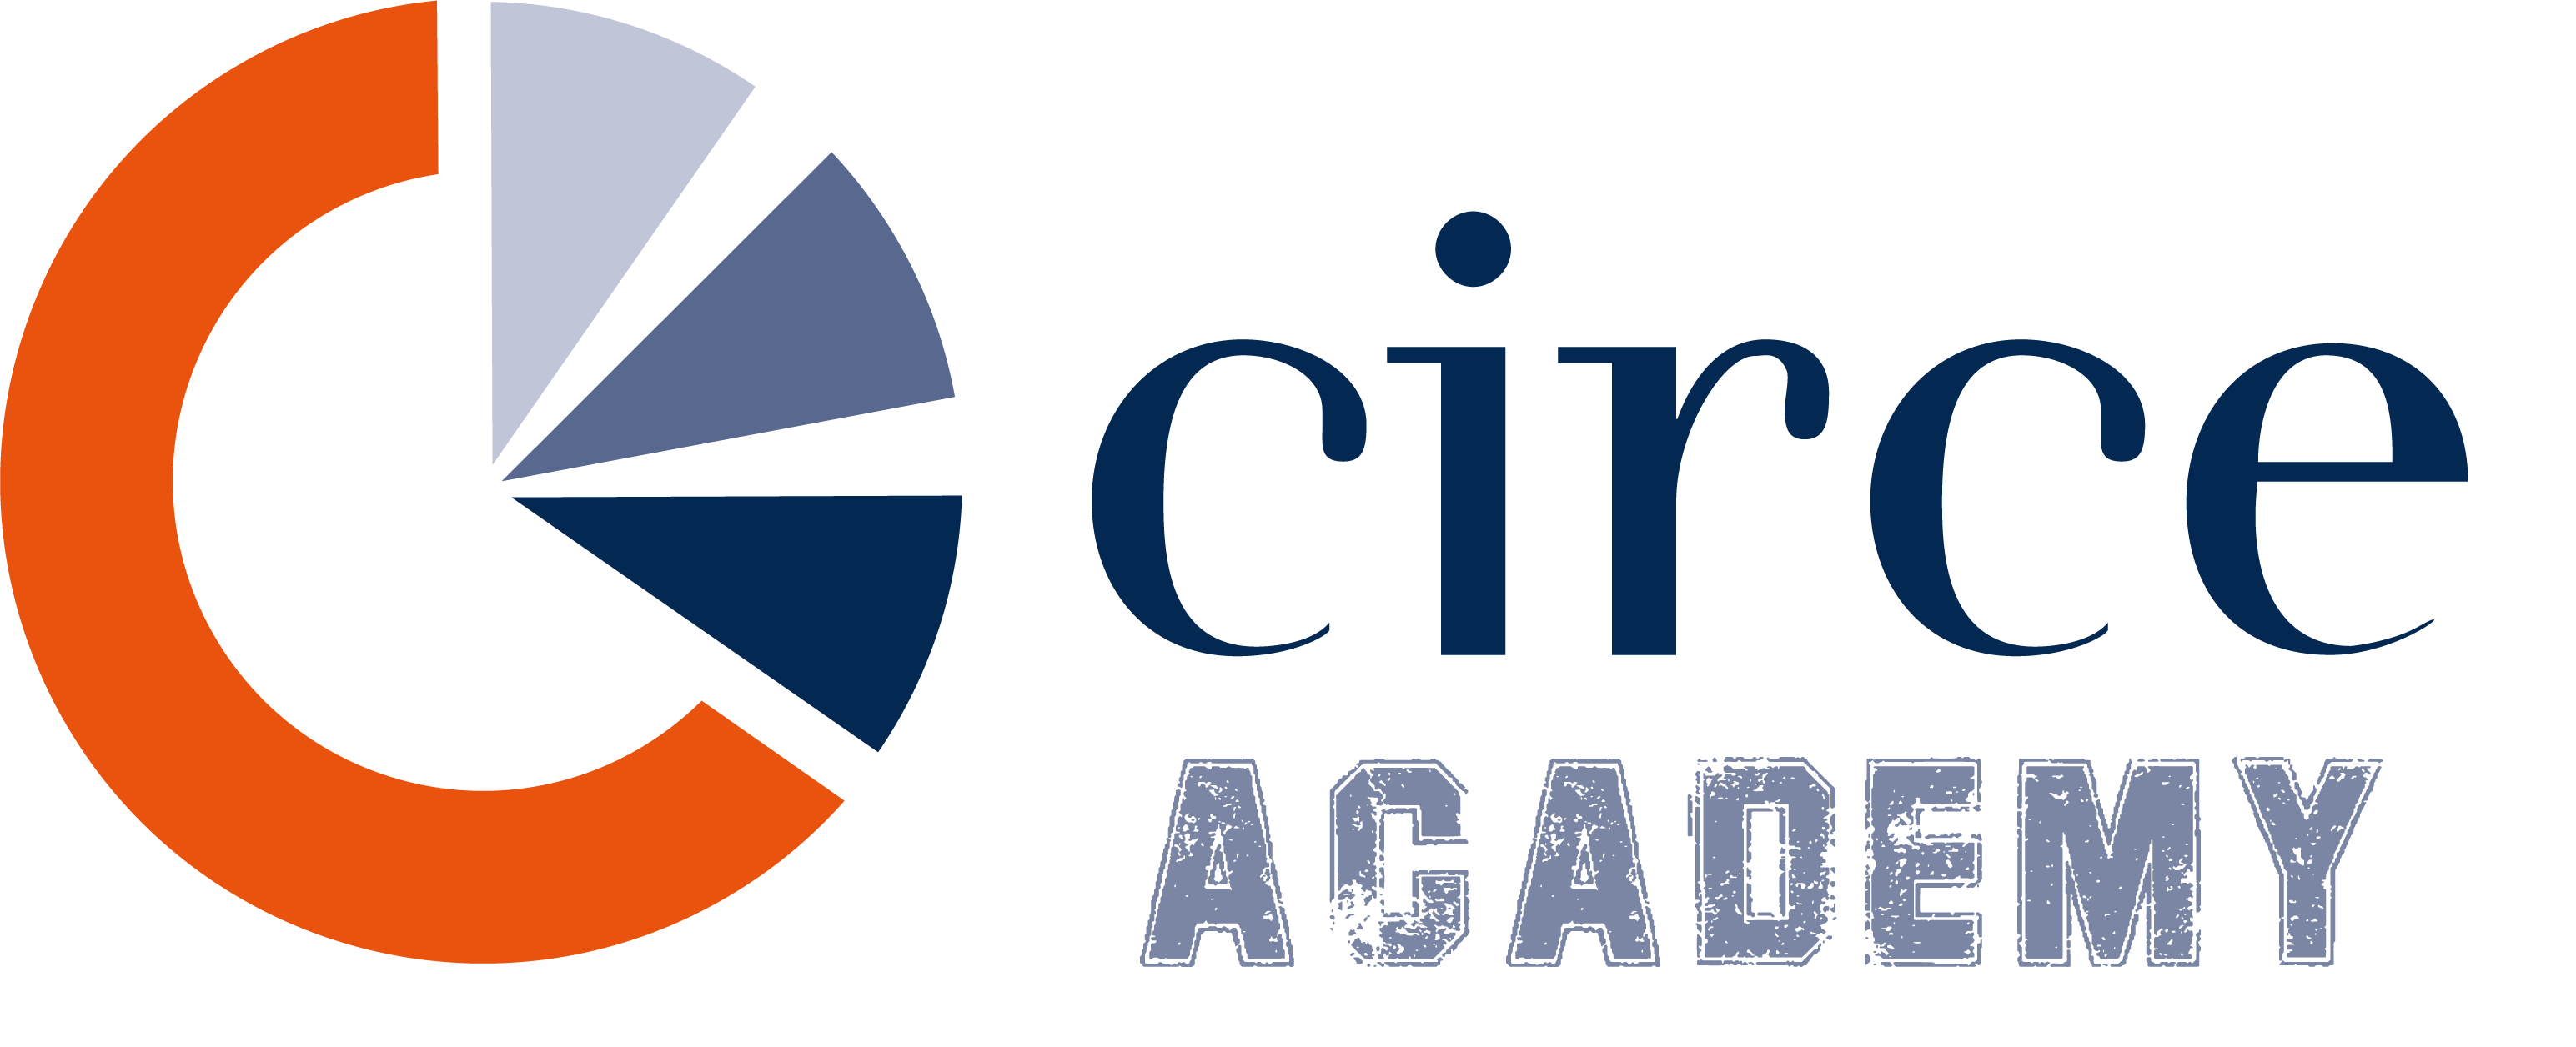 CIRCE lanza un completo programa formativo y laboral destinado a potenciar el talento joven en el sector de la innovación